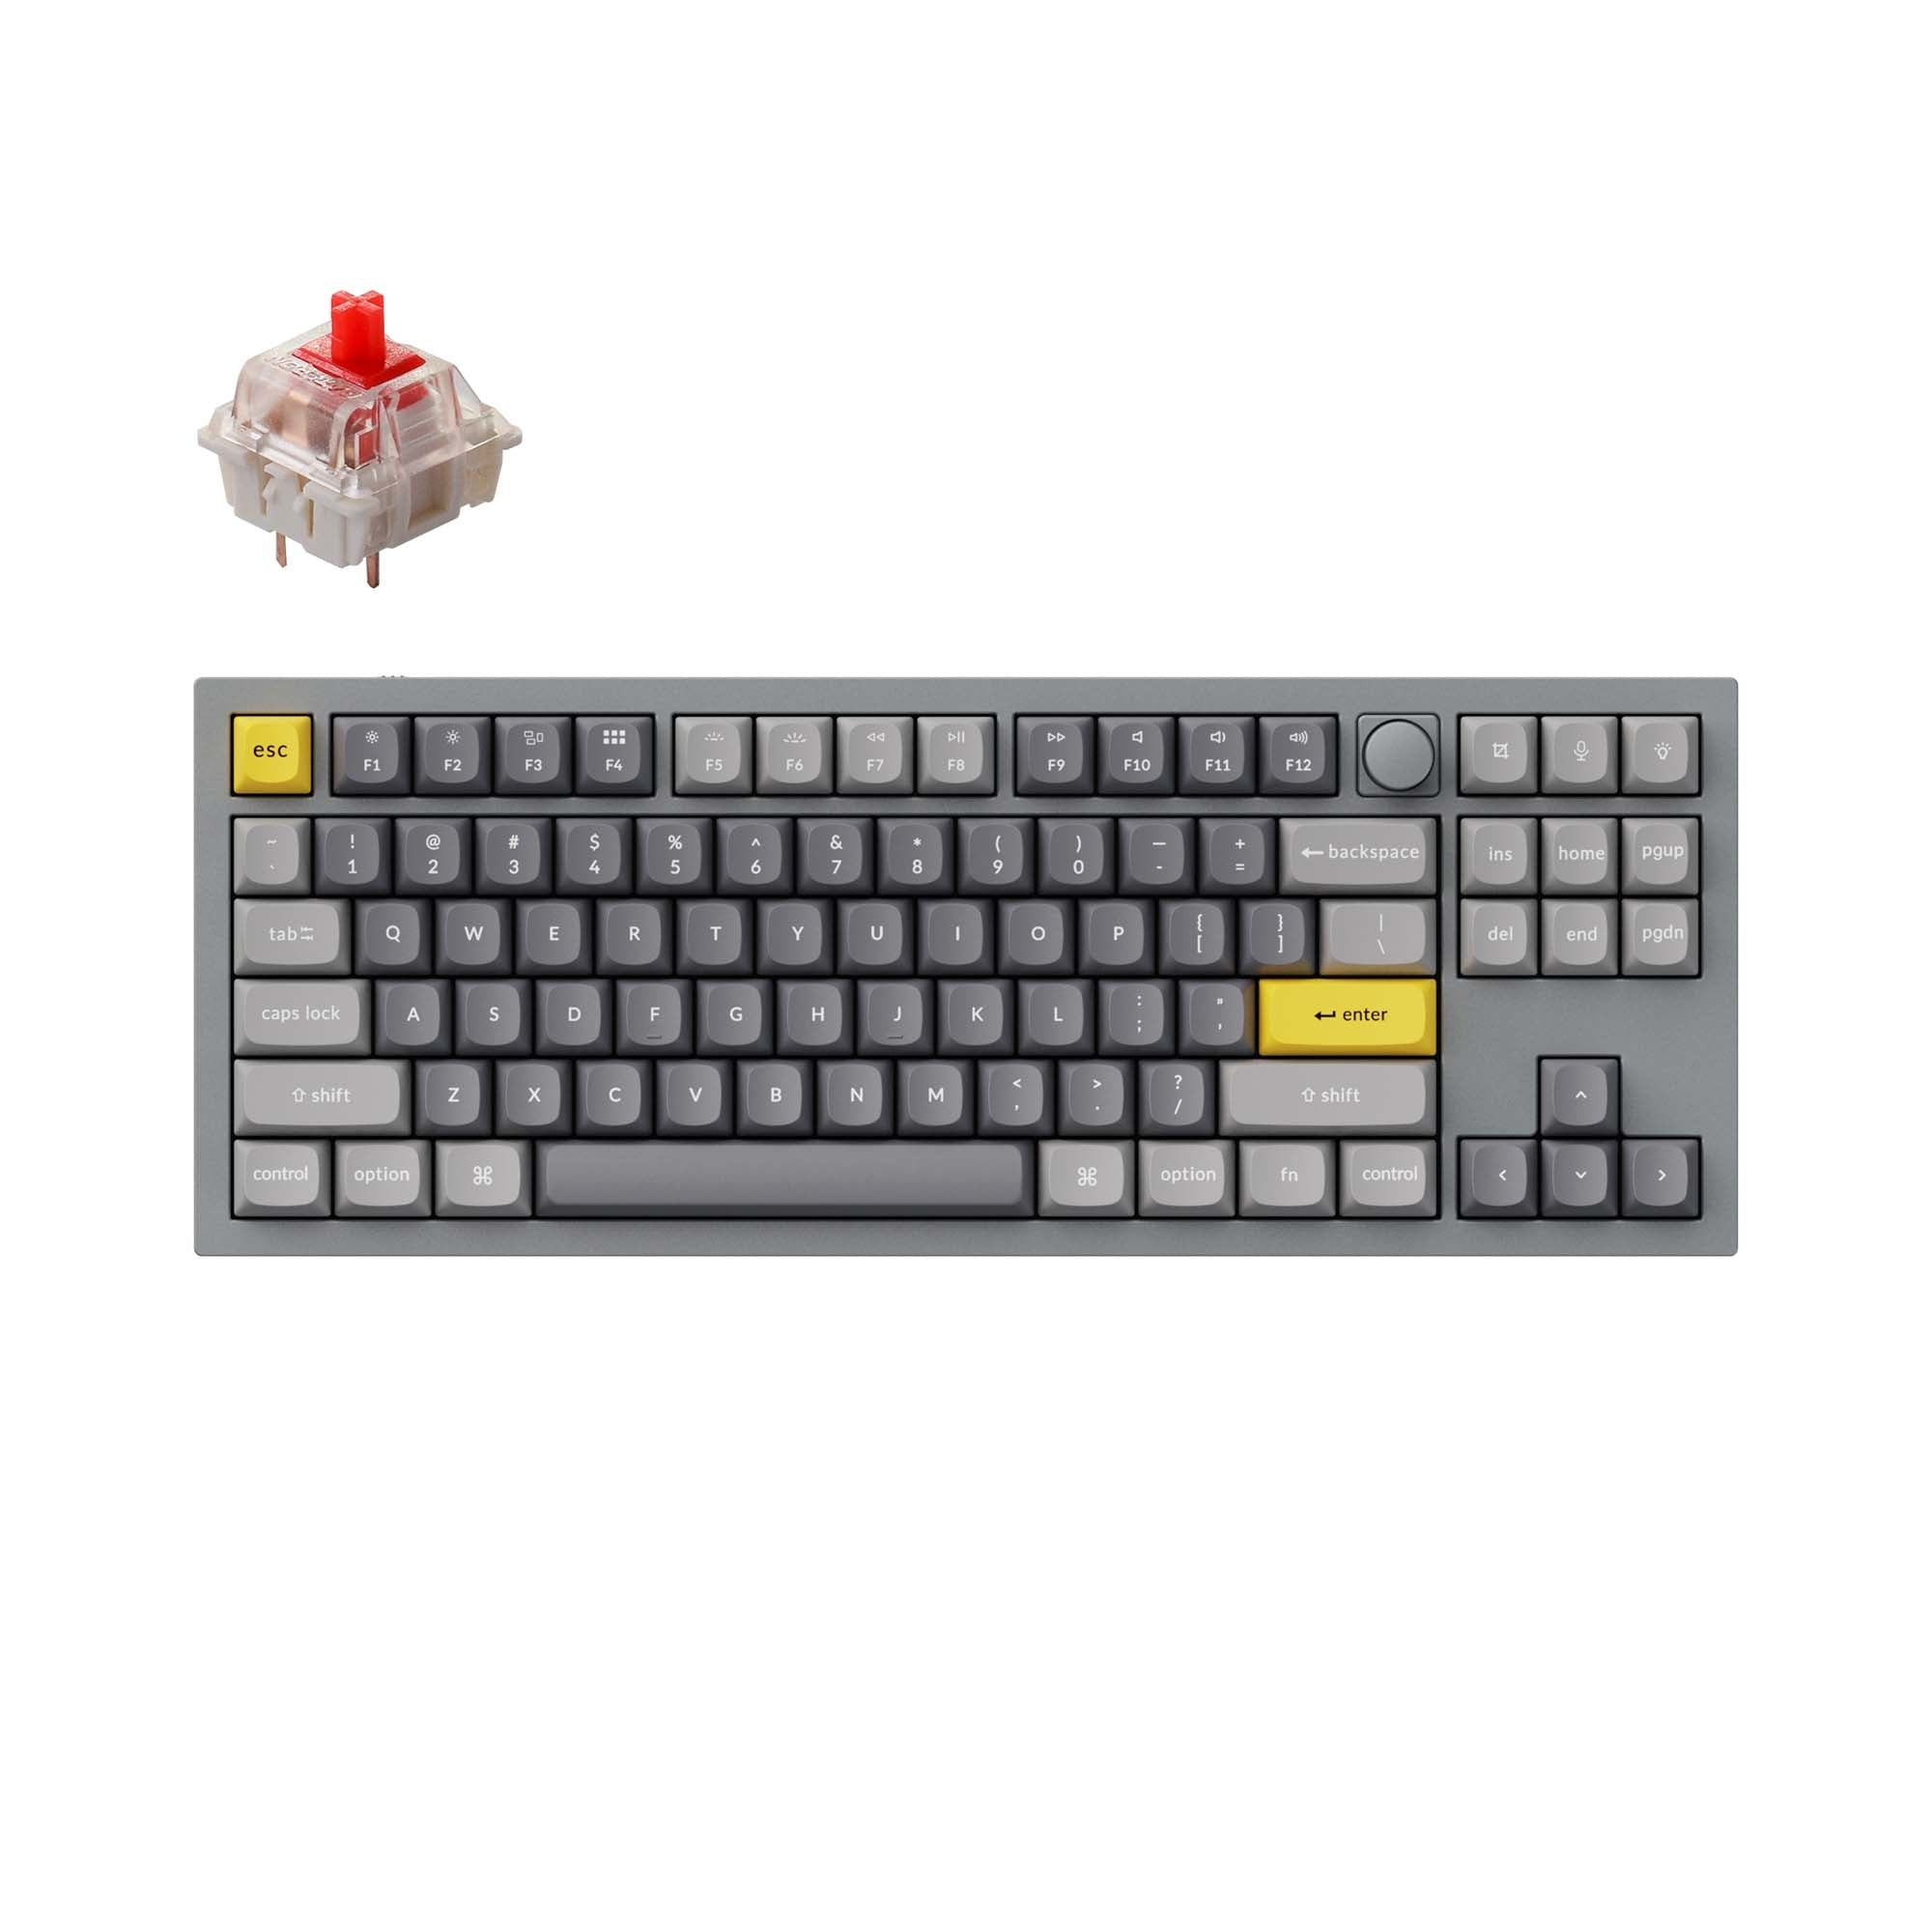 Keychron-Q3-tkl-qmk-custom-mechanical-keyboard-knob-version-grey-red-B